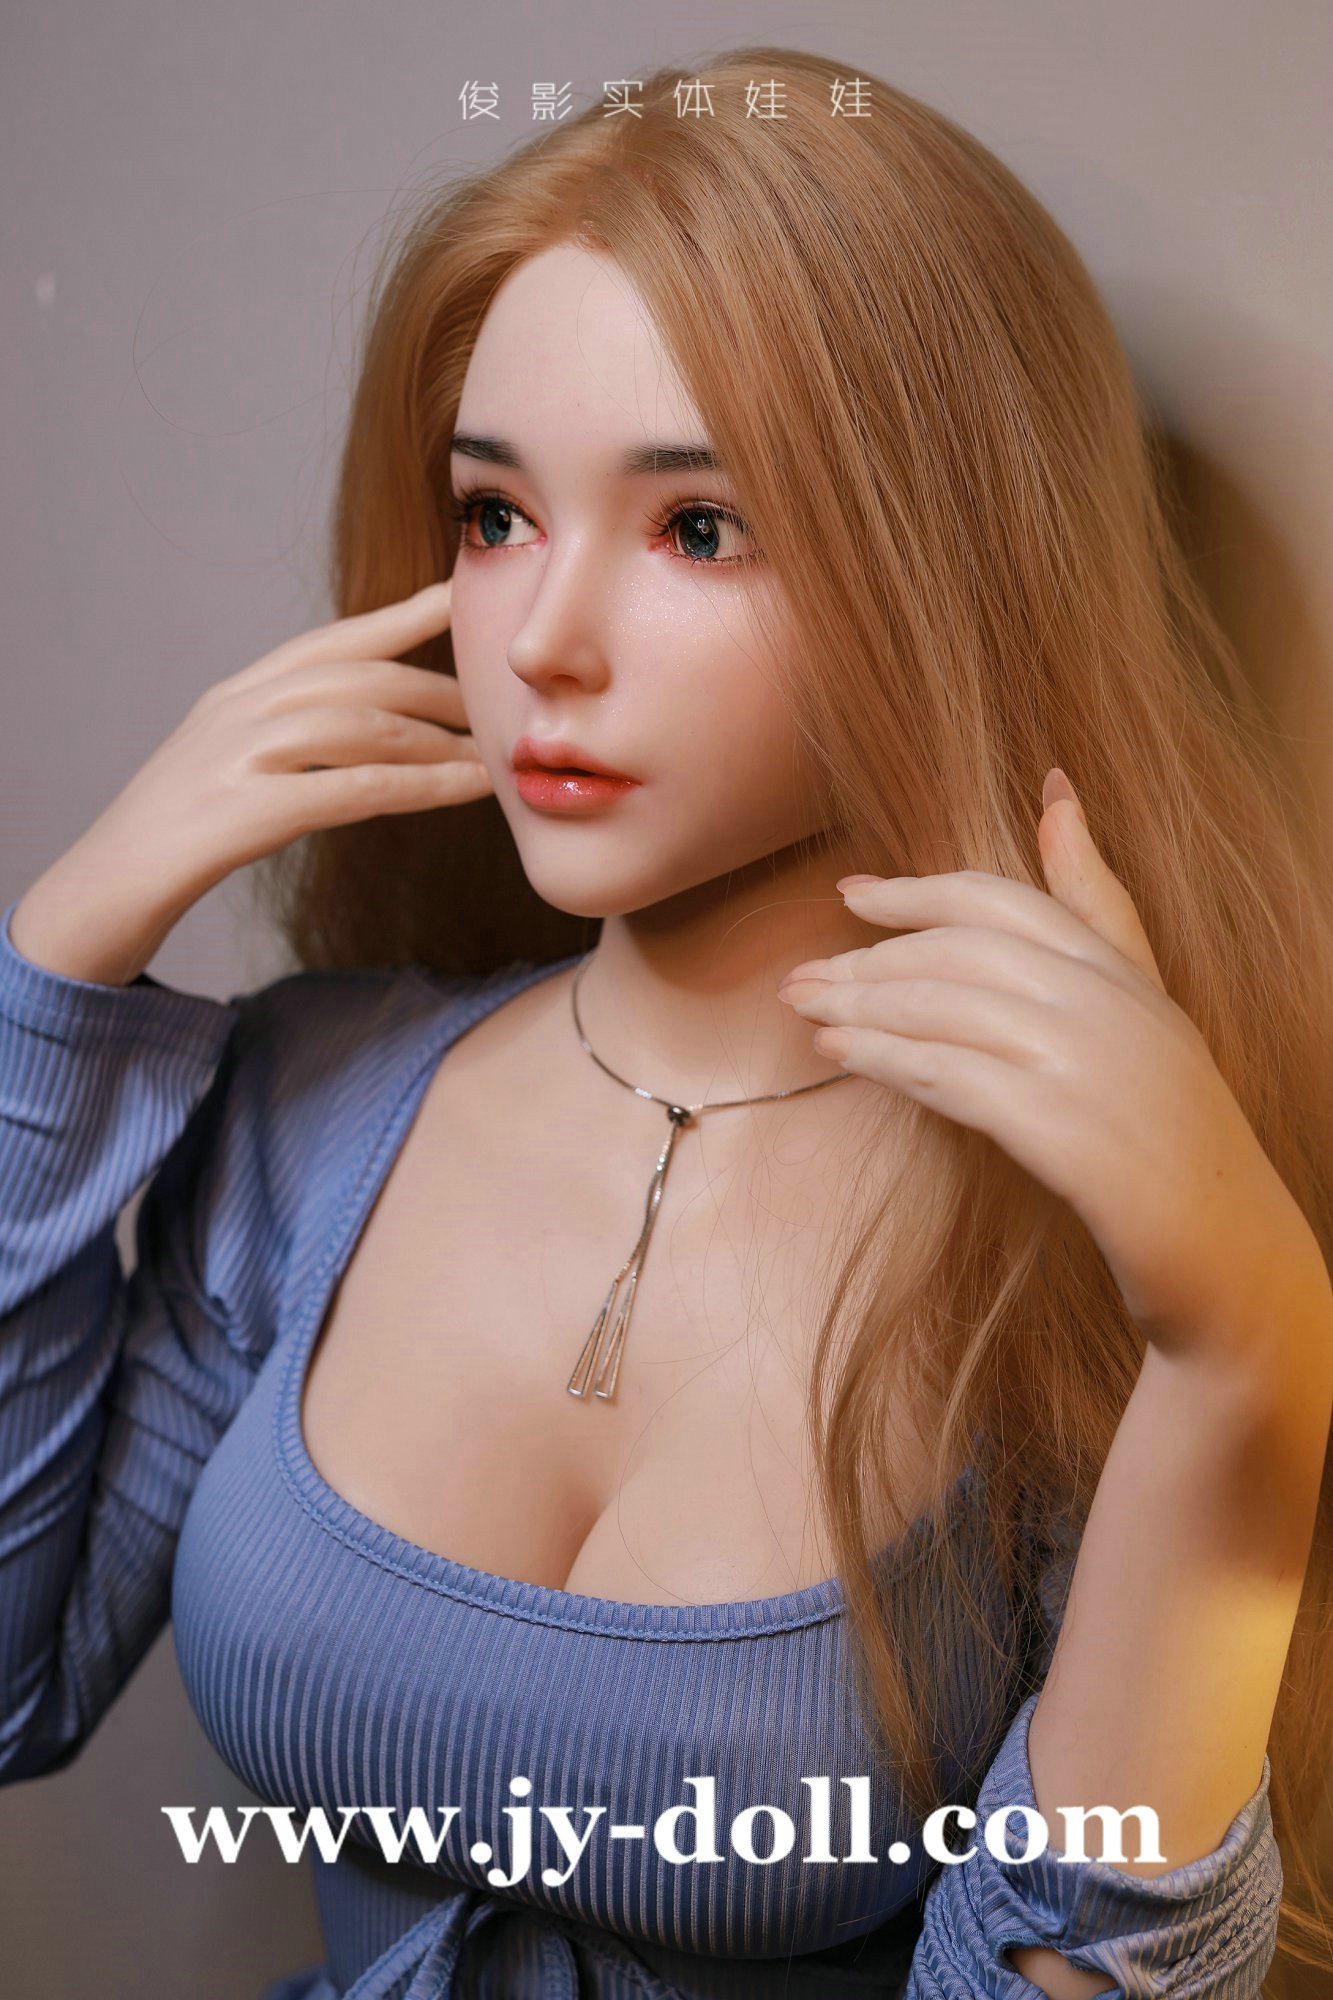 JY Doll 165cm full silicone doll Natally